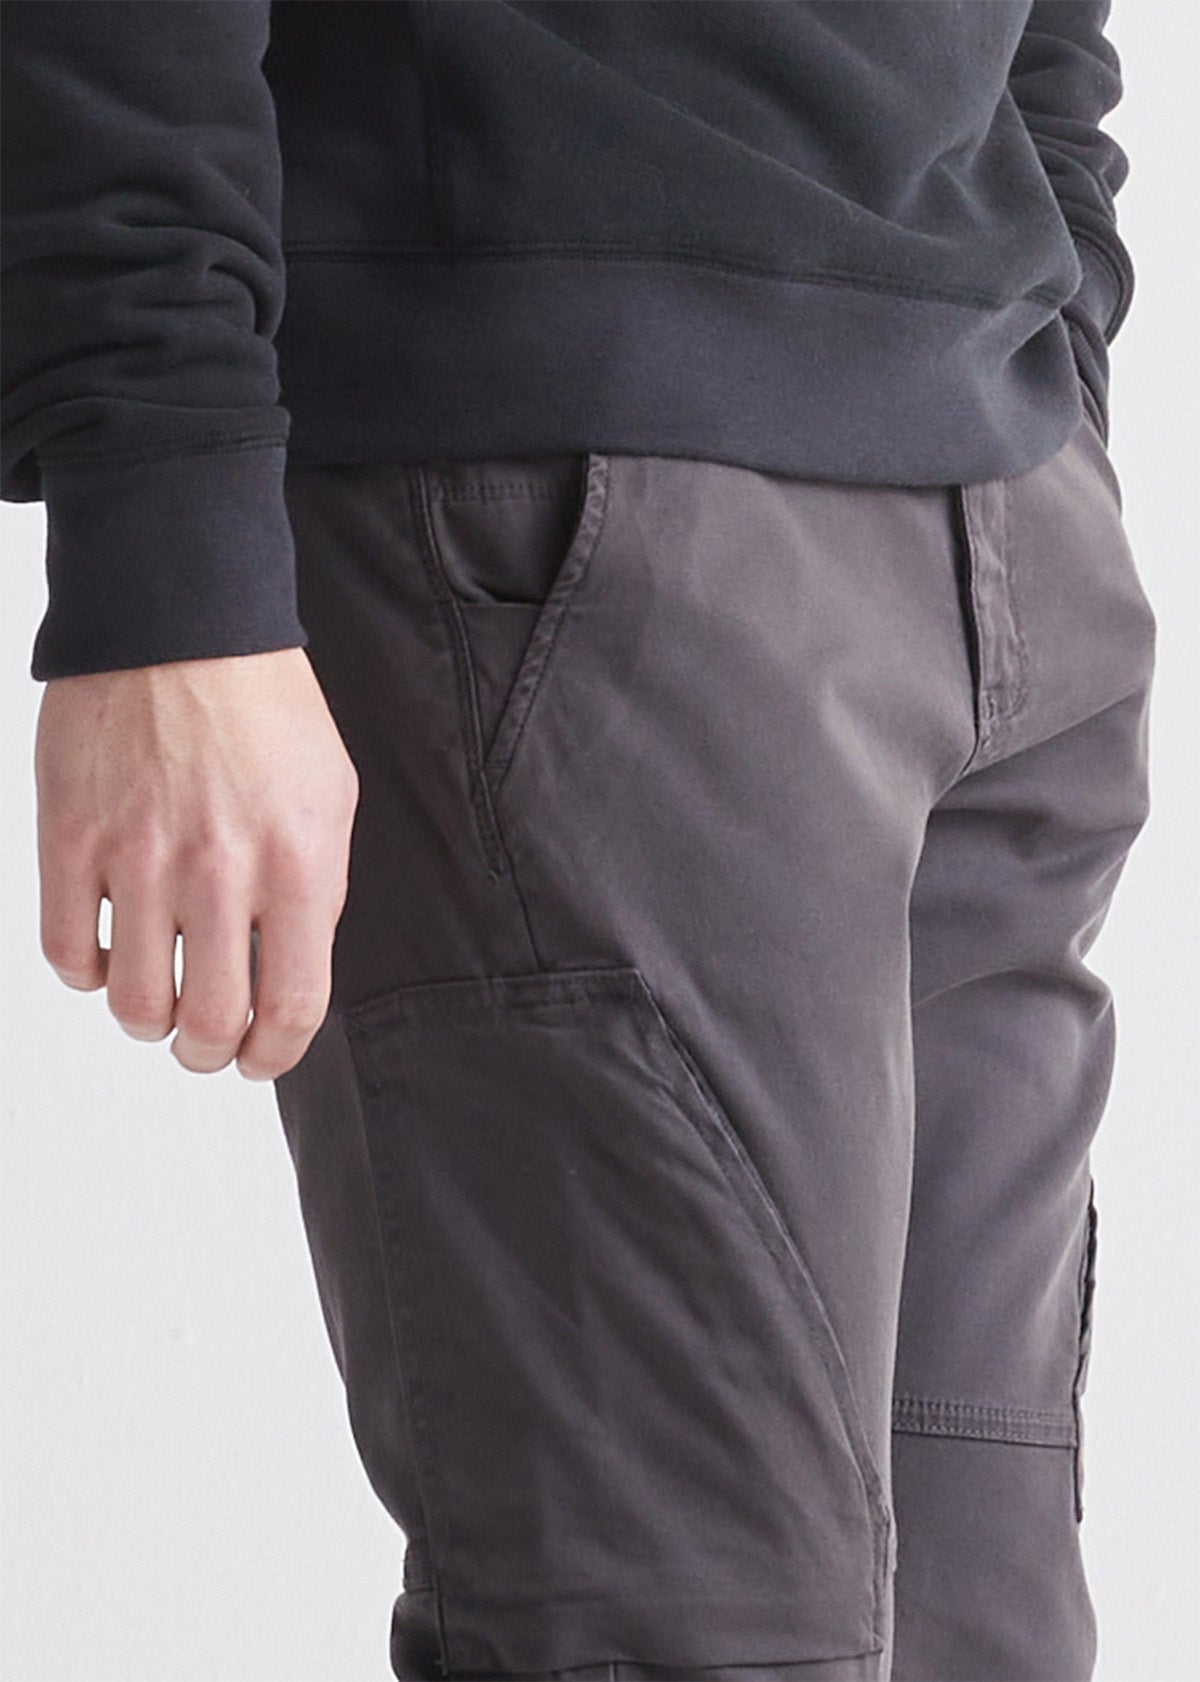 mens grey athletic waterproof pant side detail